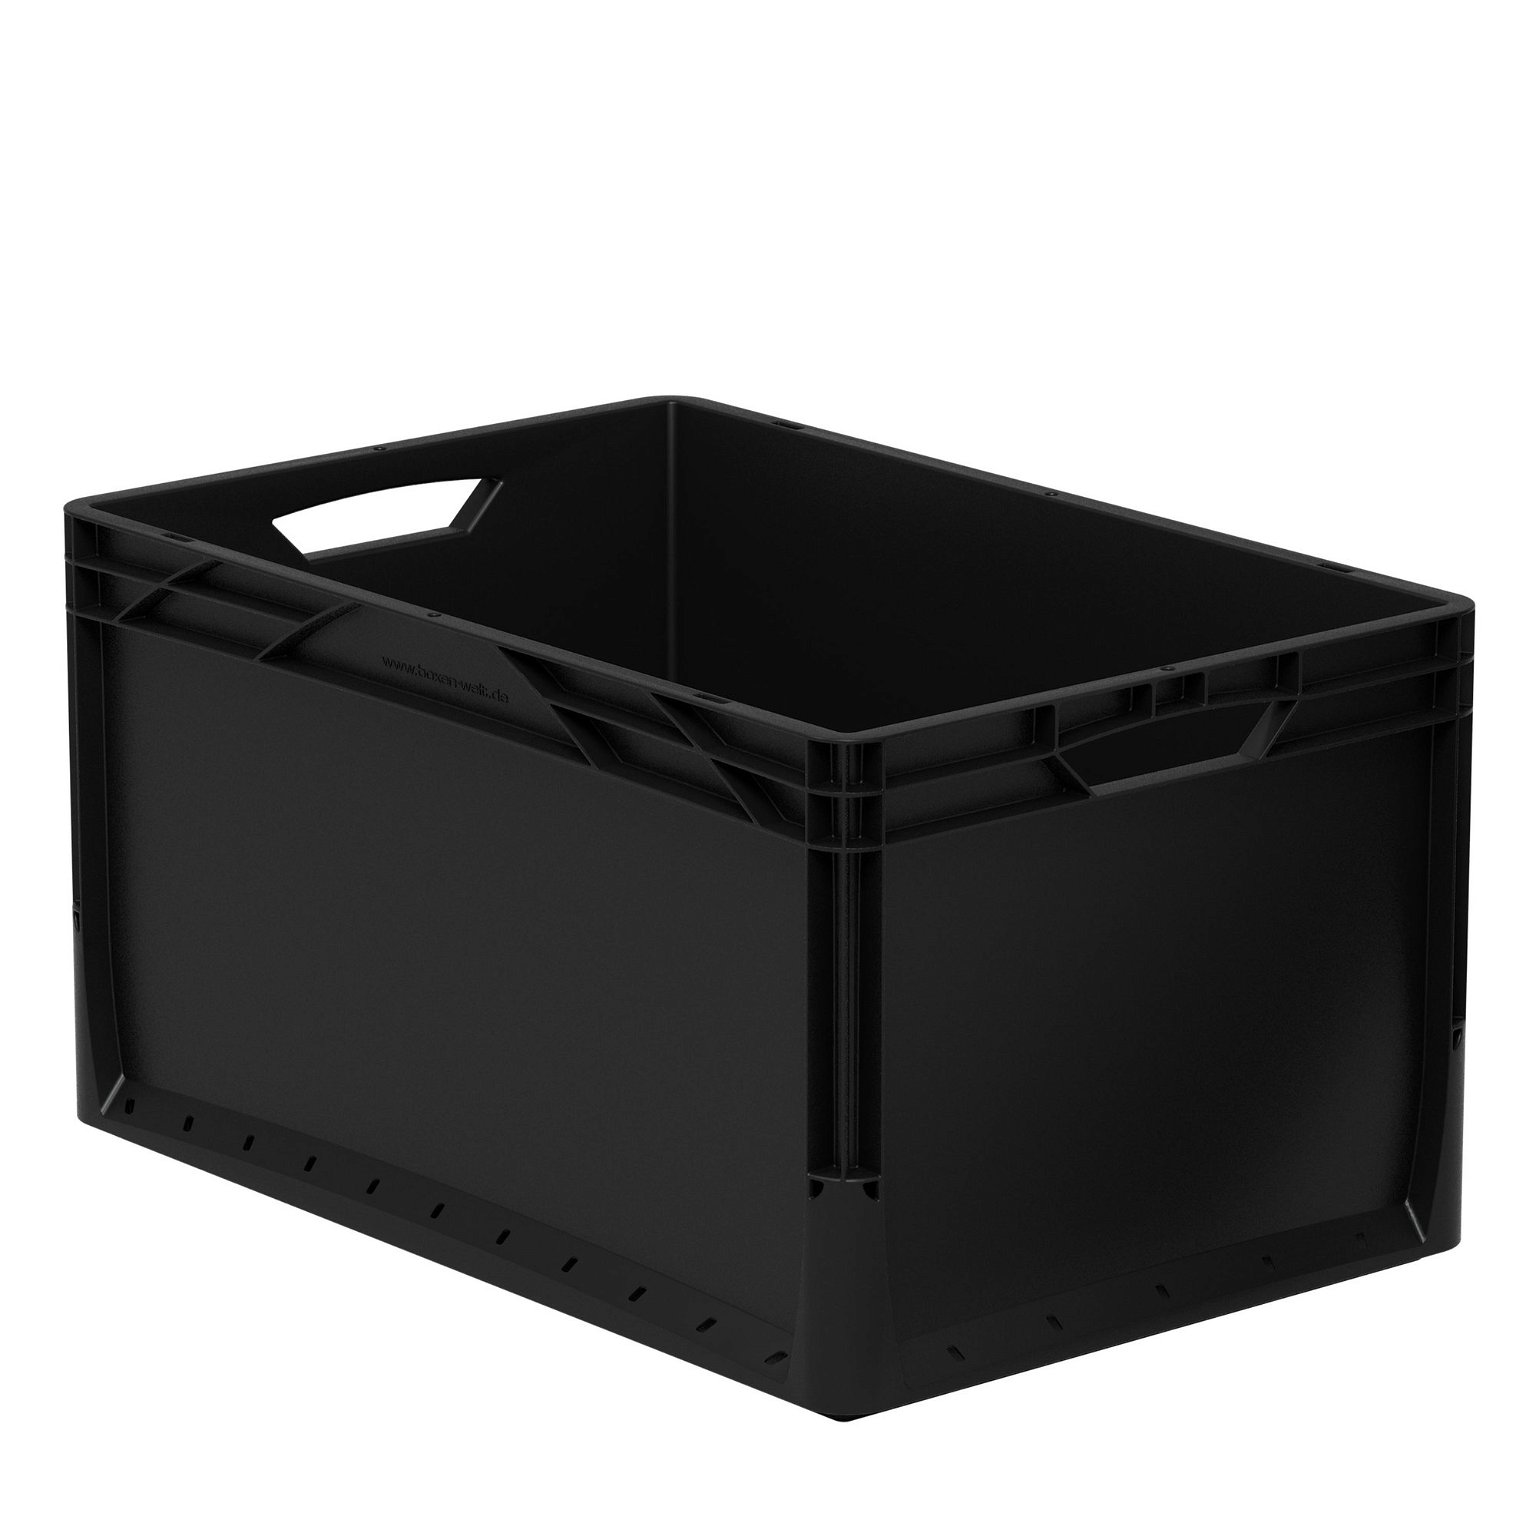 Daiktų laikymo dėžė Eurobox system 60x40xh32 cm, juoda, 62 l